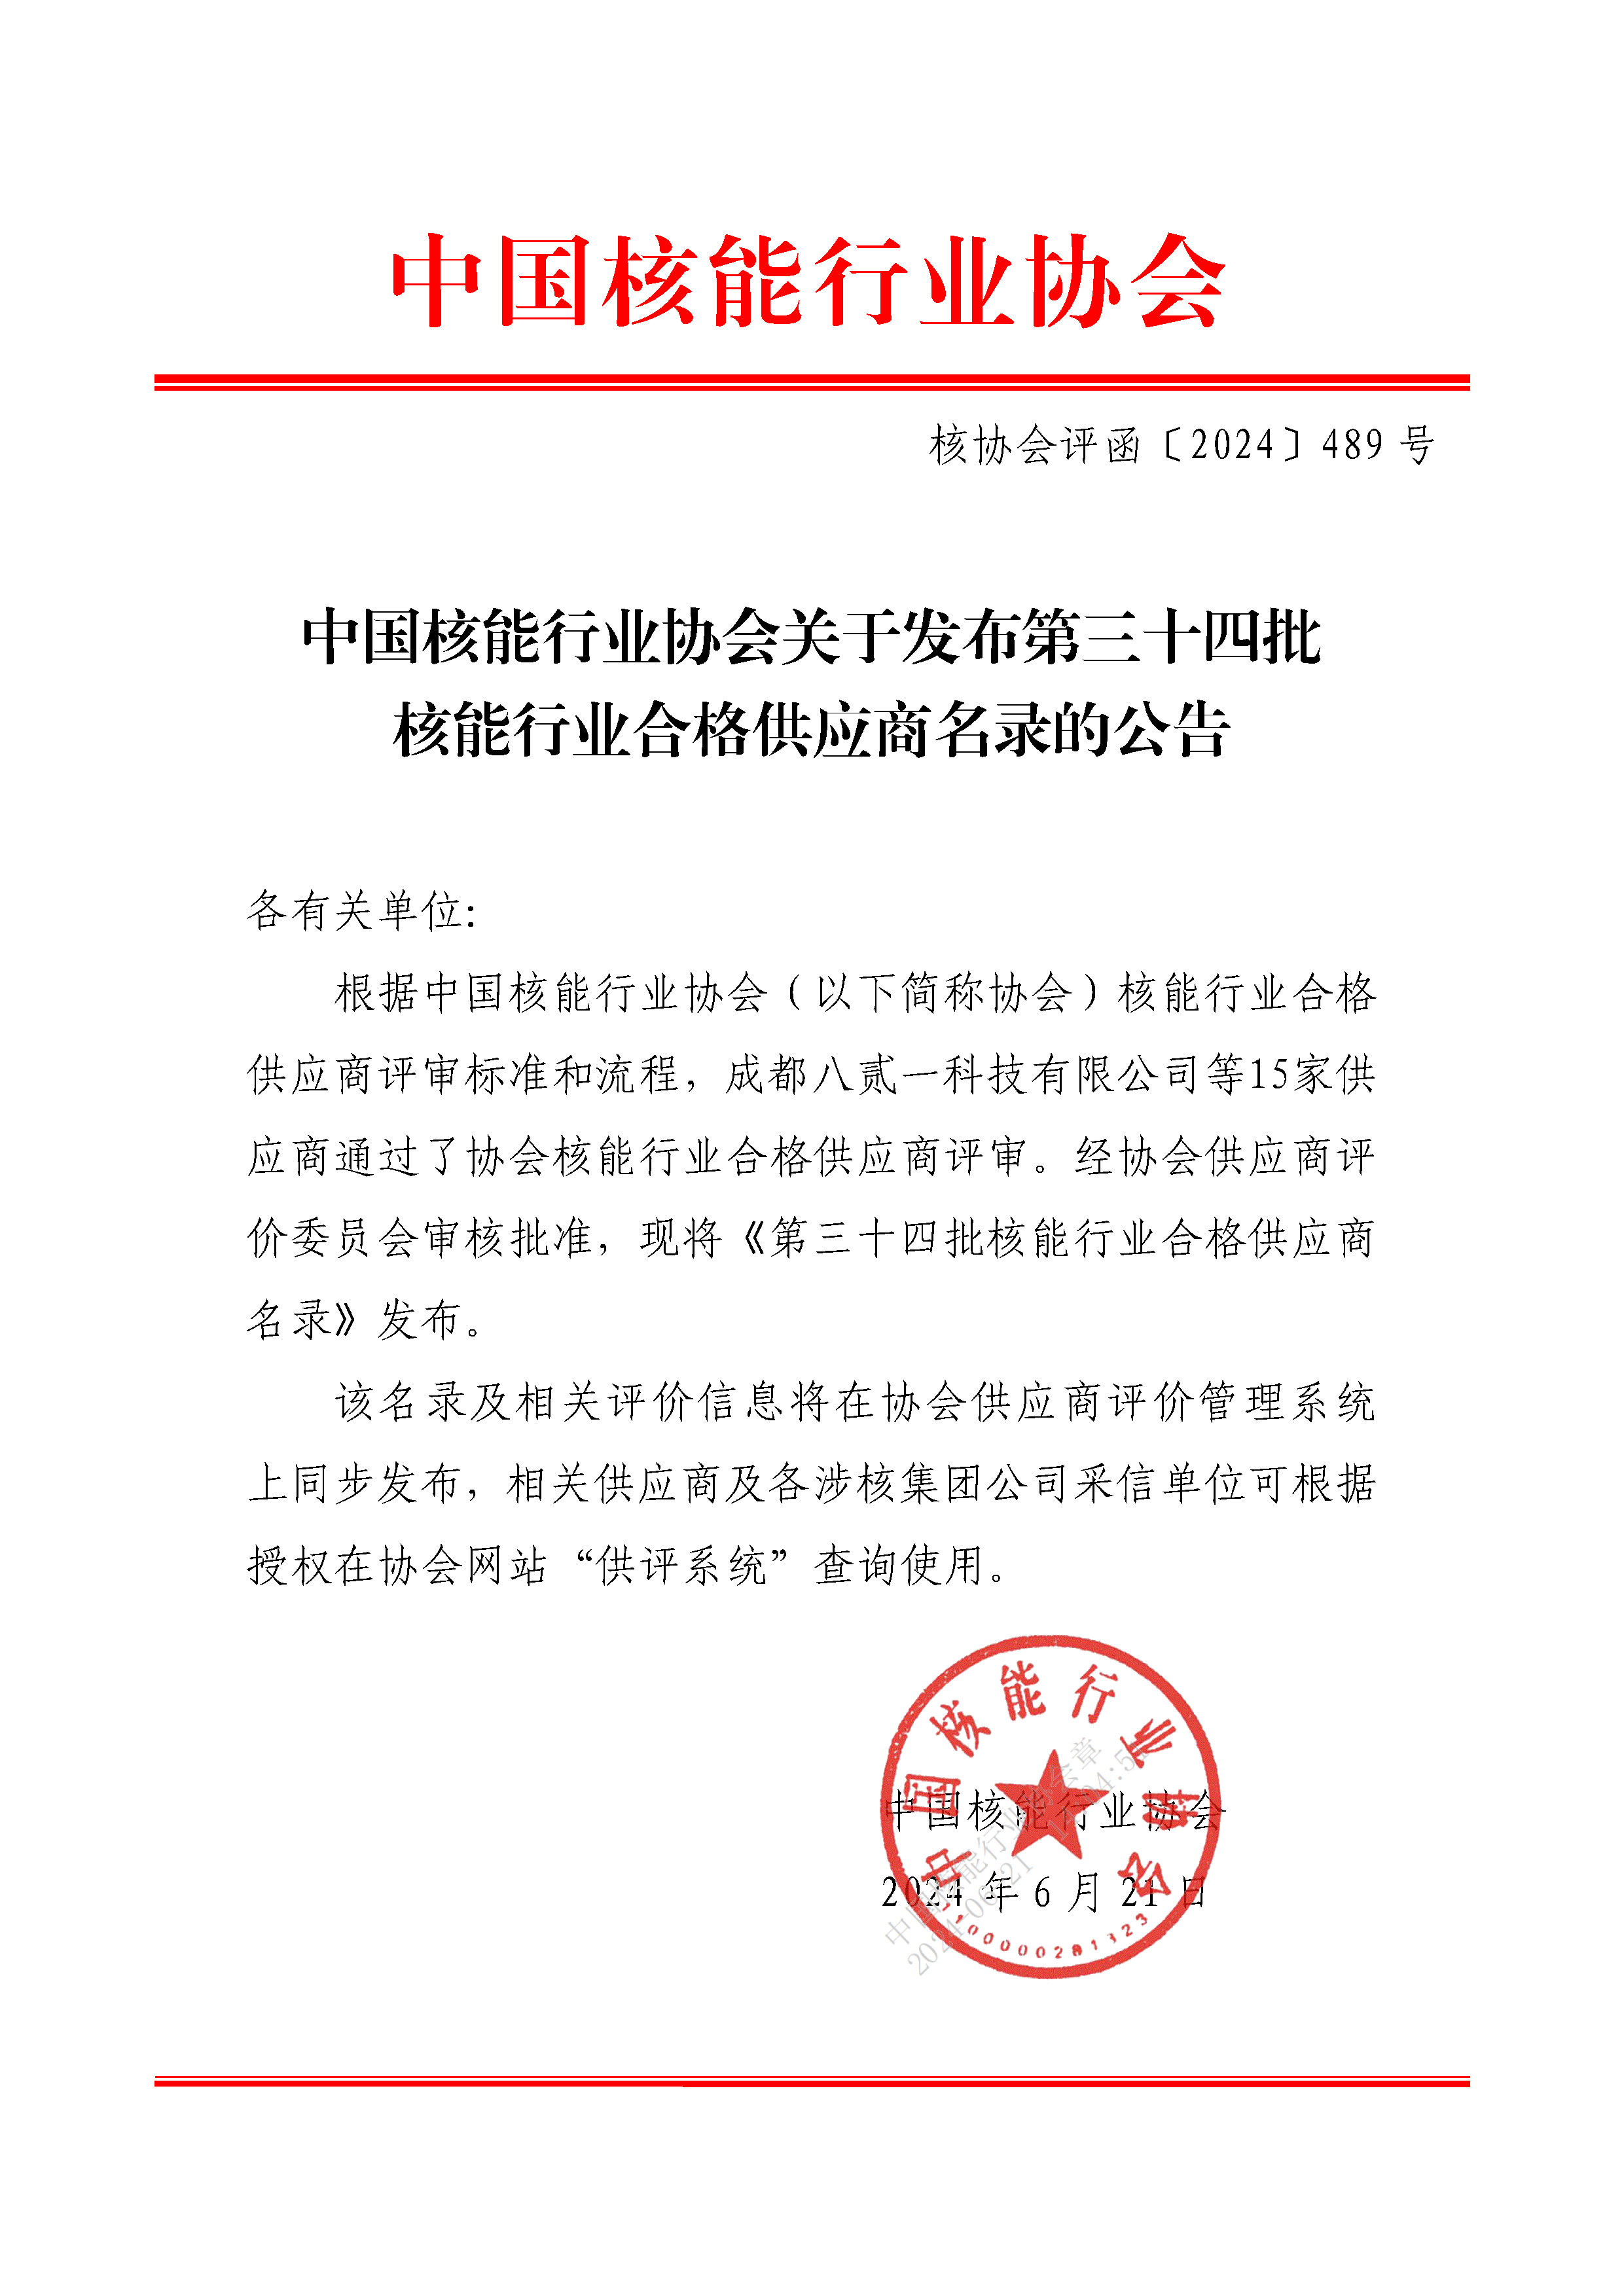 中国核能行业协会关于发布第三十四批核能行业合格供应商名录的公告_页面_1.png